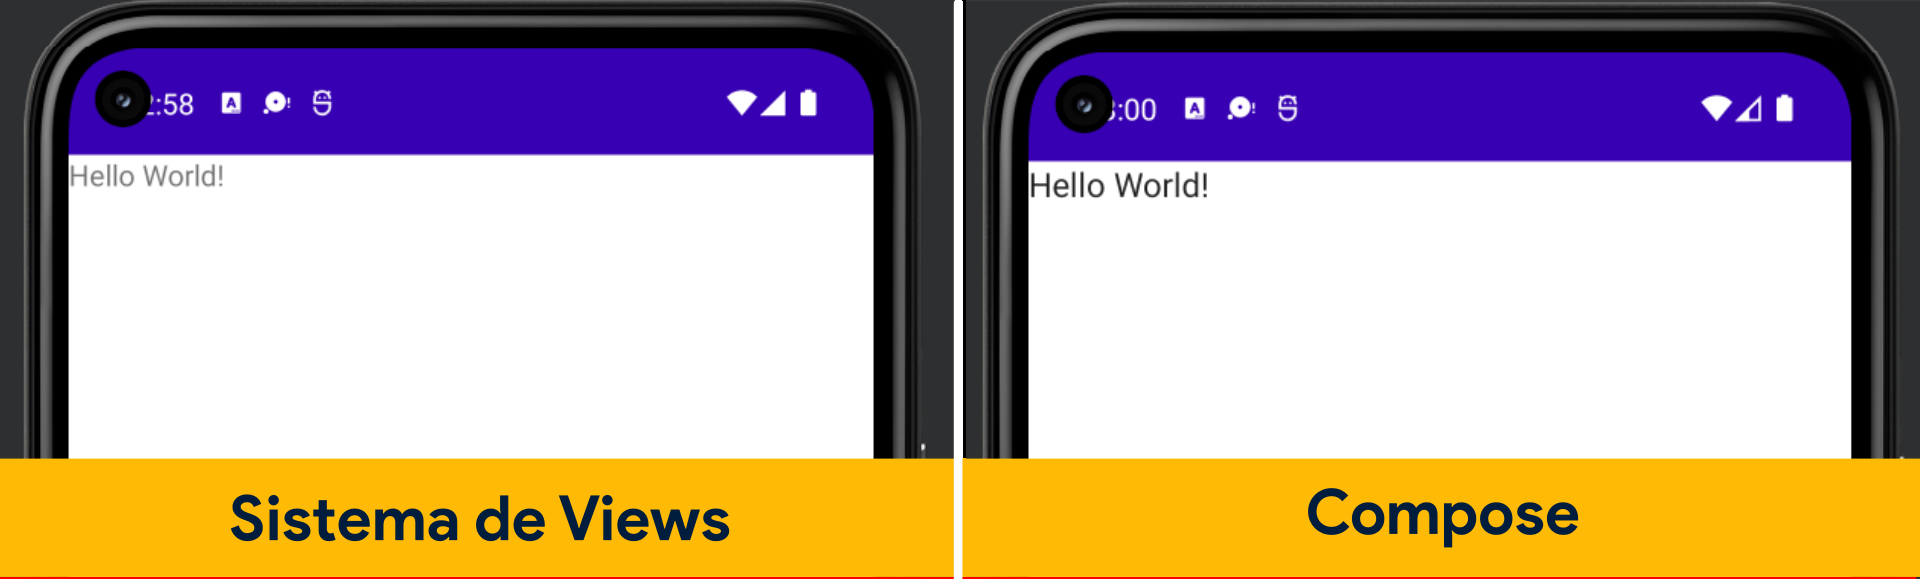 O texto “Hello World!" é mostrado dentro da tela de dois celular separados por por uma linha branca, o primeiro celular tem a frase “Sistema de Views” escrito abaixo da tela, já o segundo a palavra “Compose”.